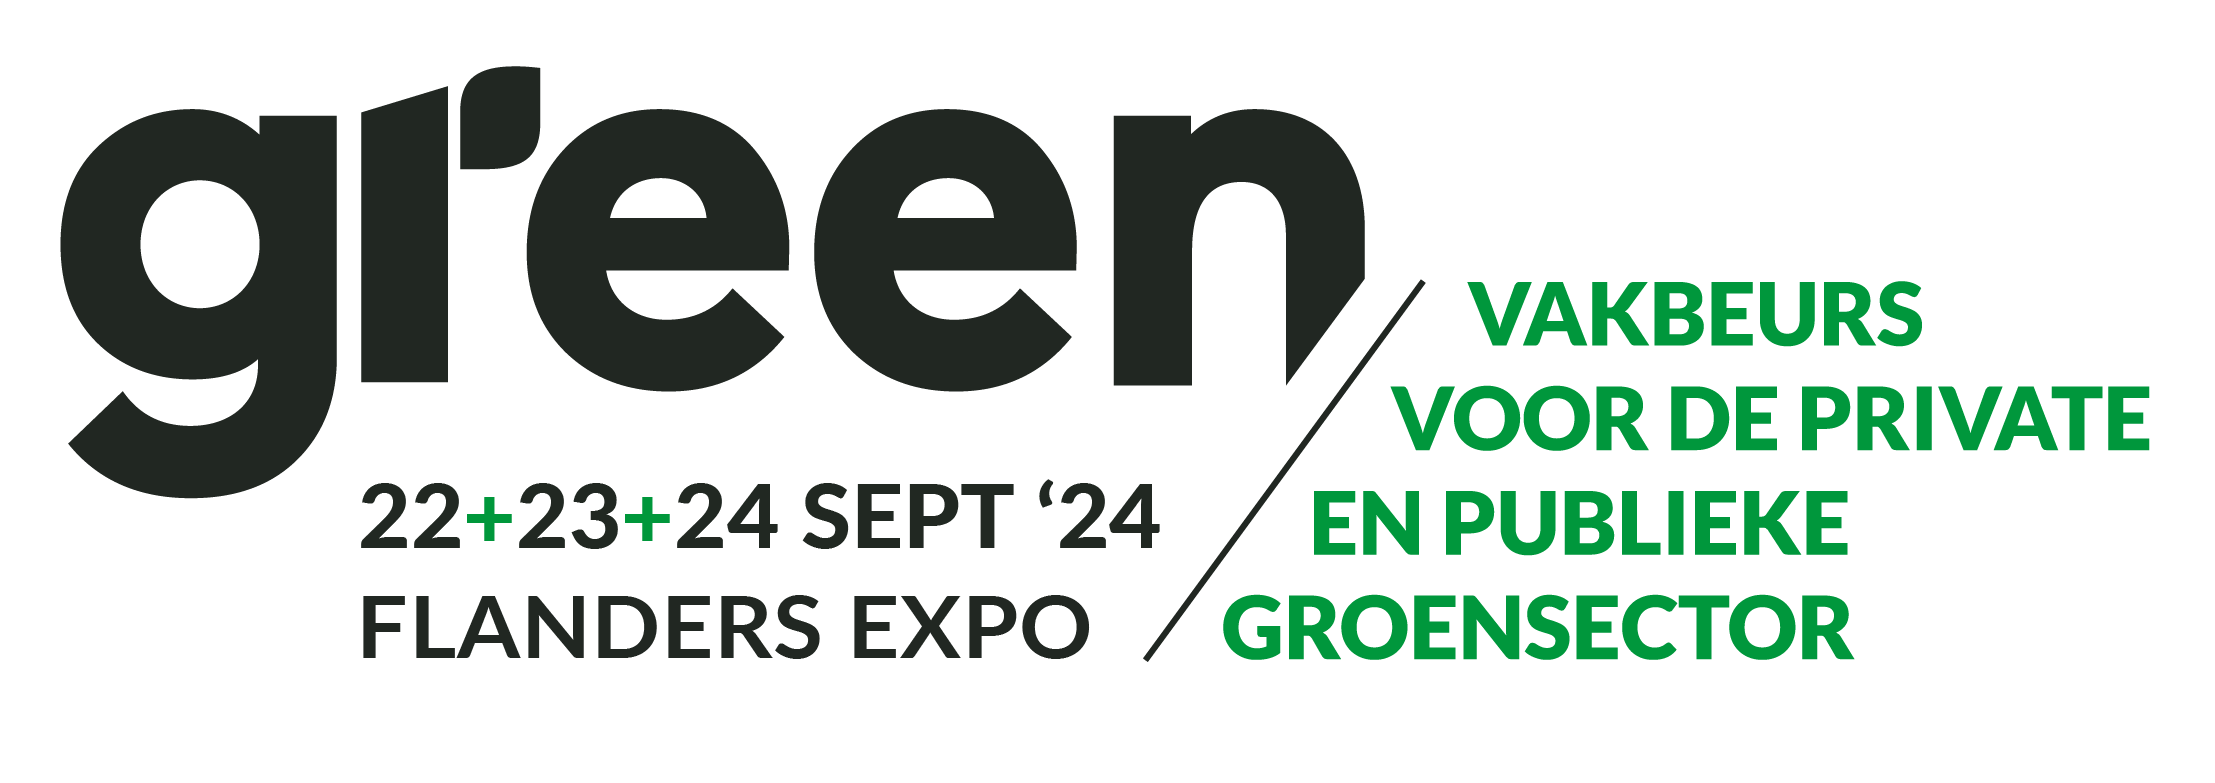 Green Expo 2024